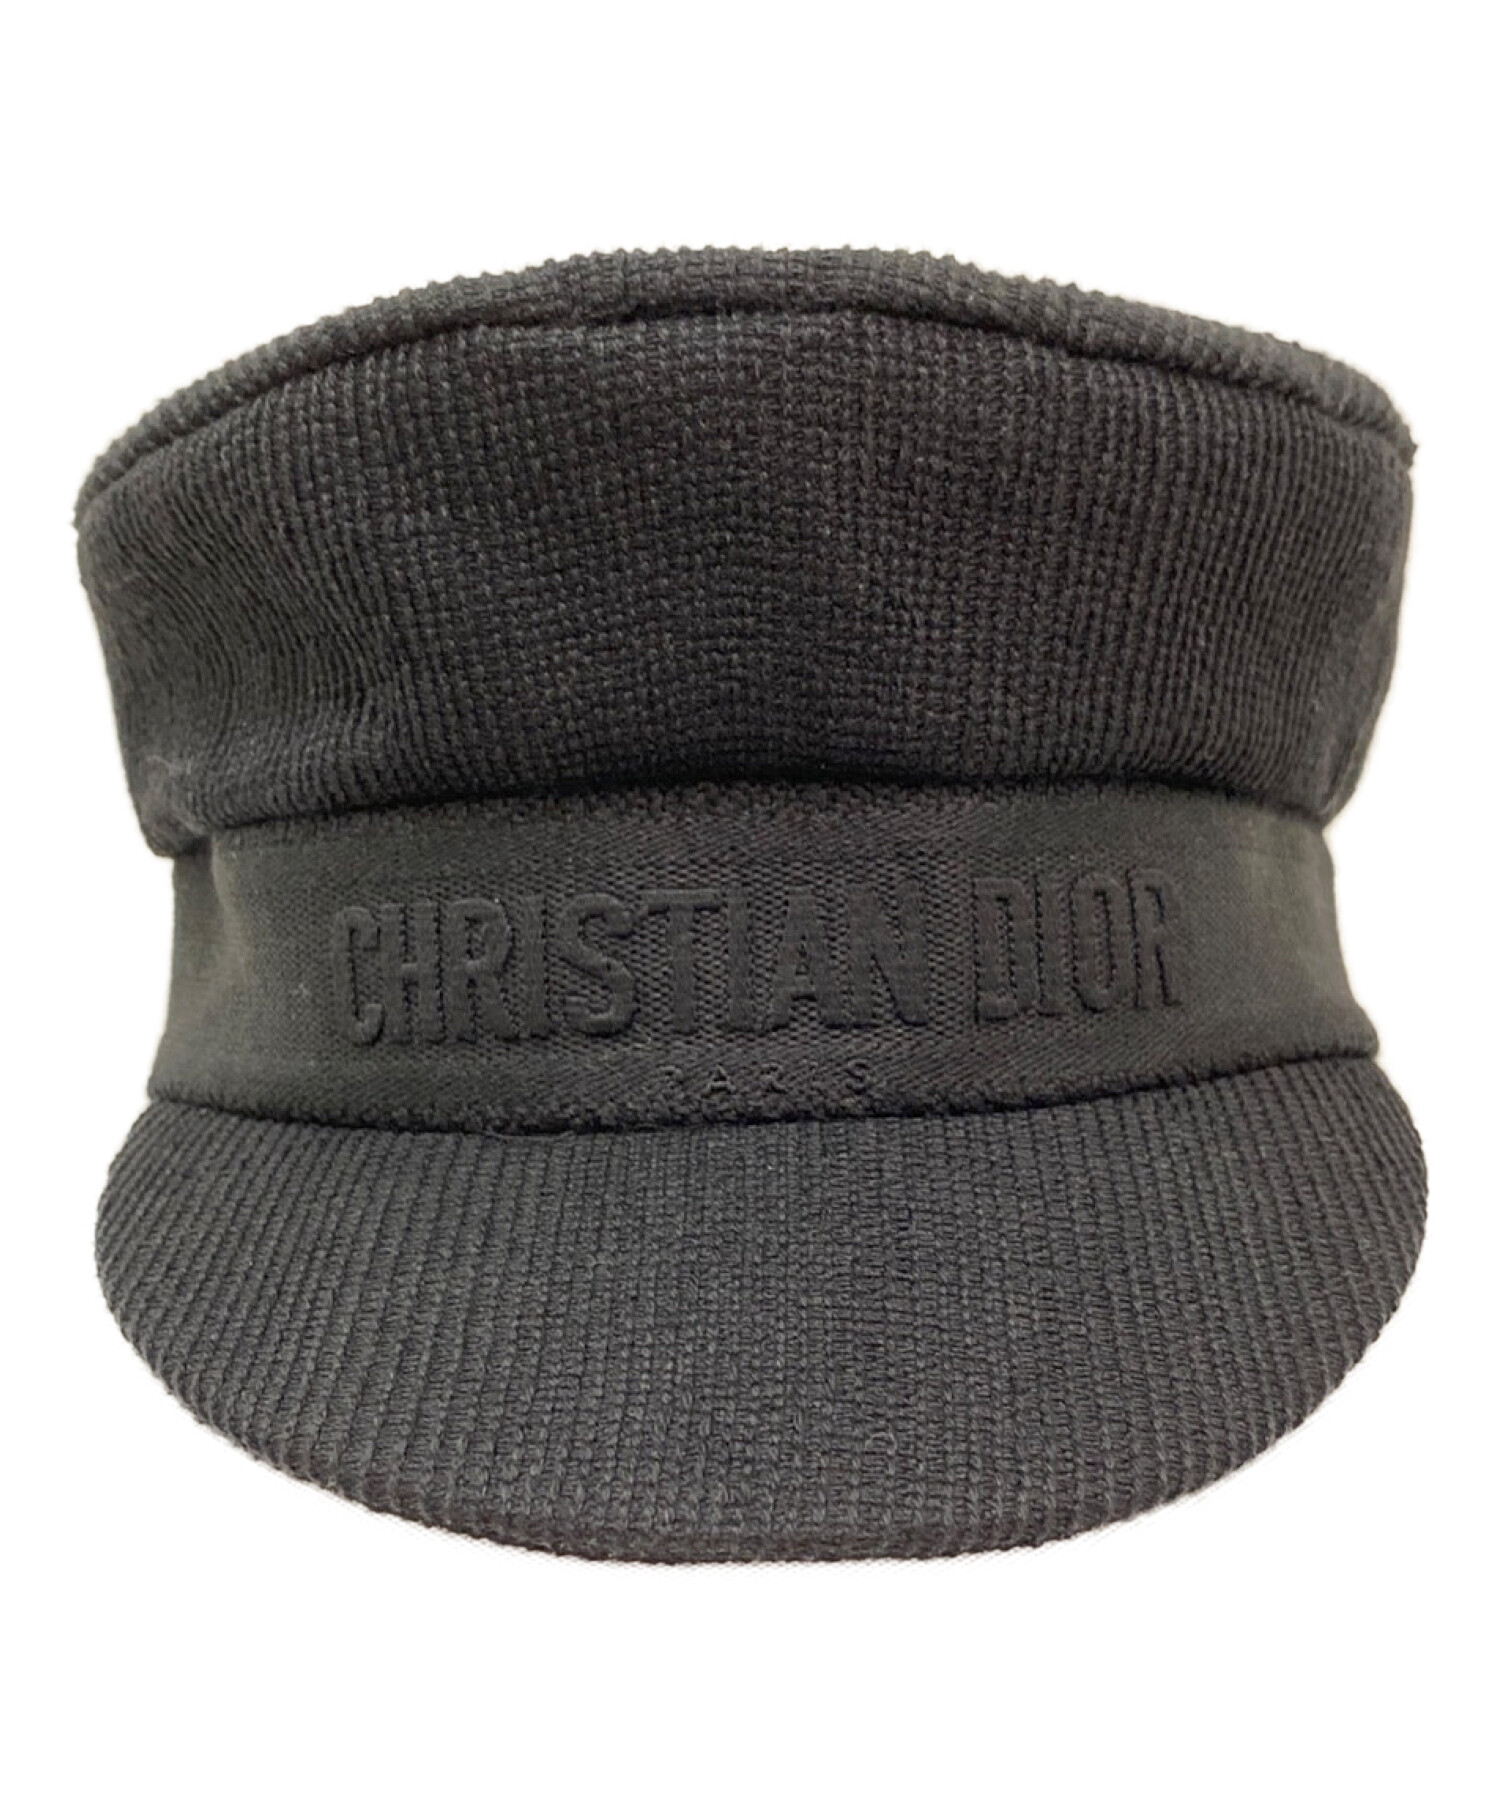 Christian Dior (クリスチャン ディオール) キャスケット ブラック サイズ:56